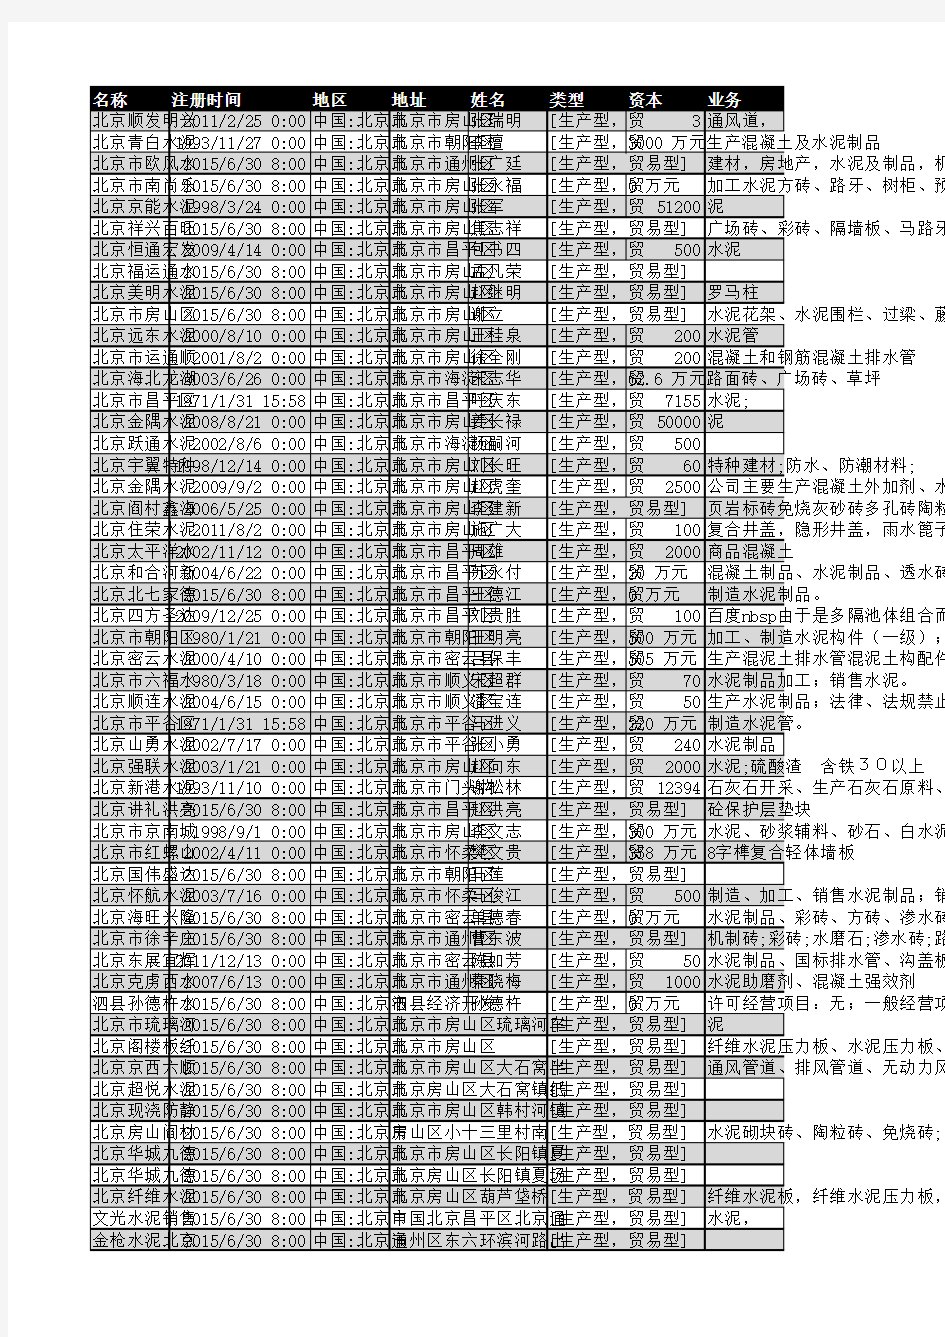 2018年北京市水泥行业企业名录3474家